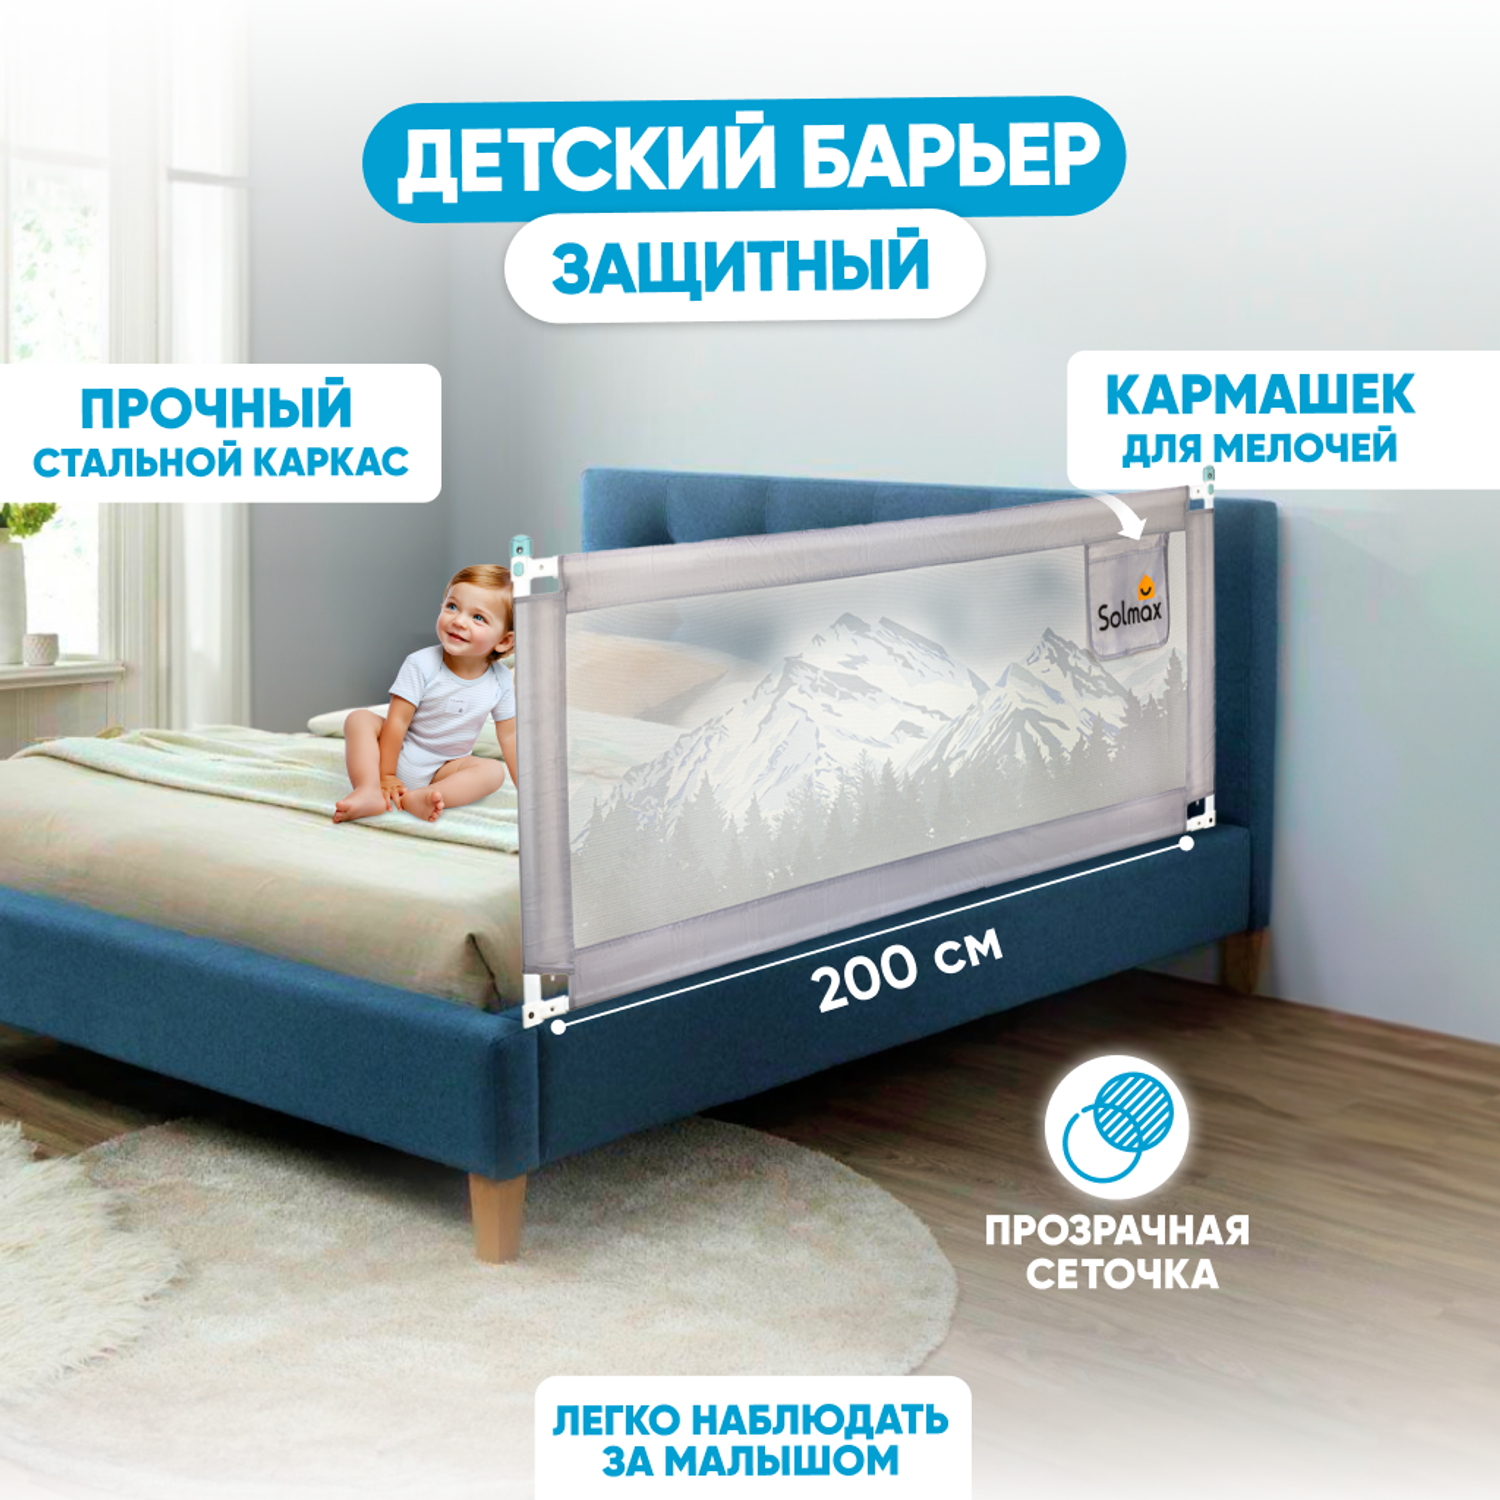 Закажите защитные ворота и систему заграждения для детей в СПБ, Москве и регионах с доставкой